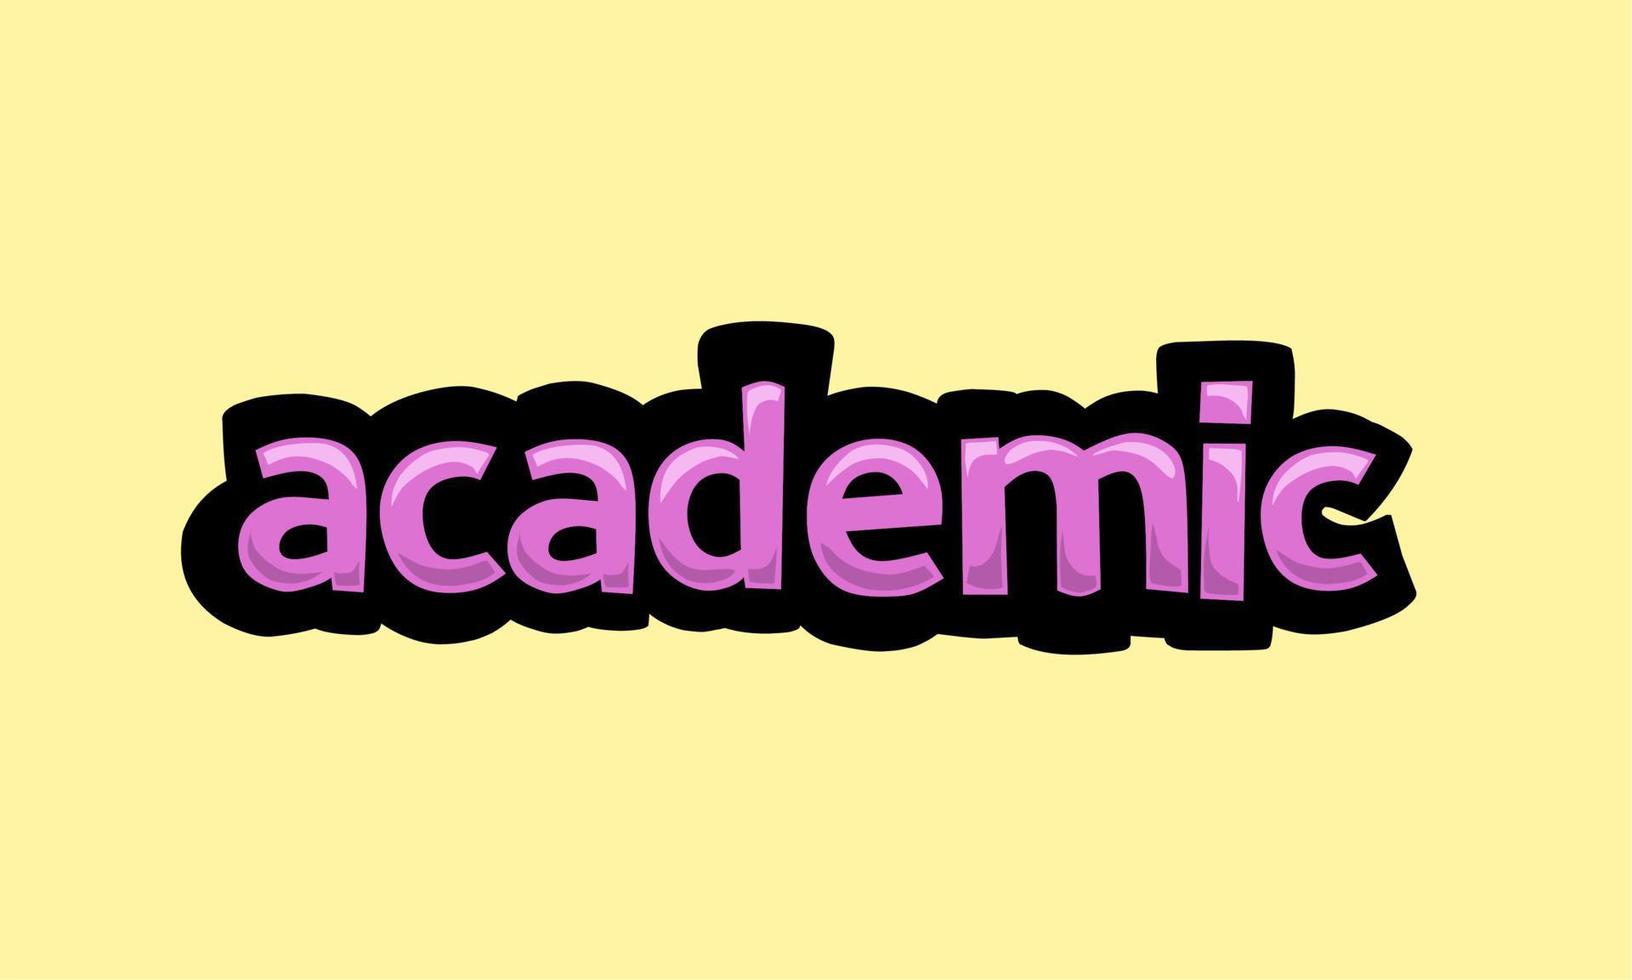 conception de vecteur d'écriture académique sur fond jaune